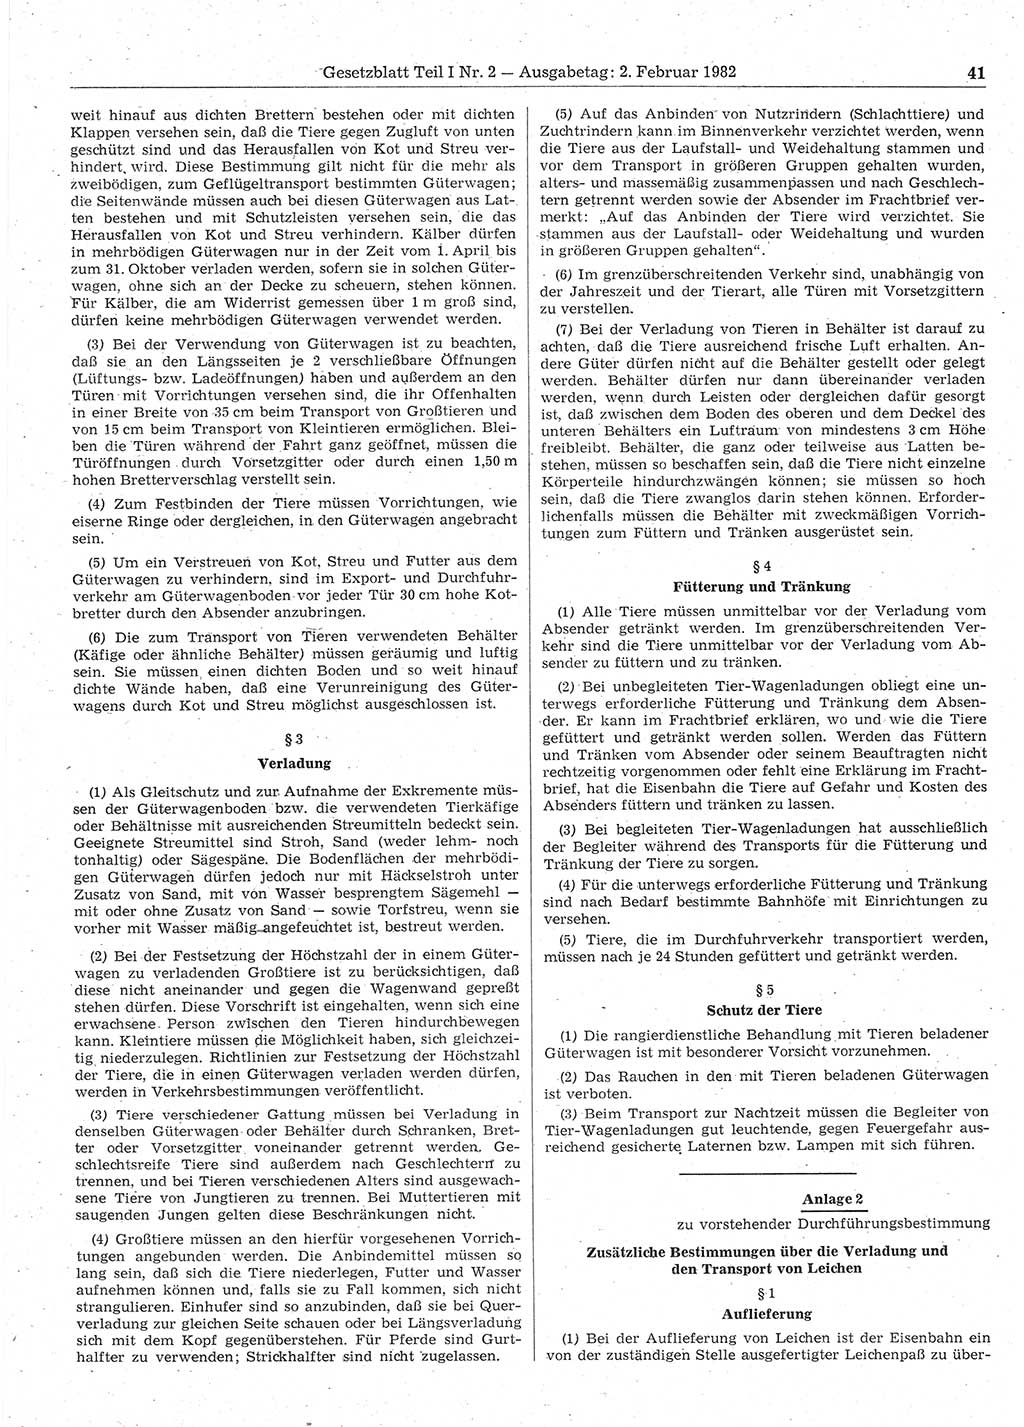 Gesetzblatt (GBl.) der Deutschen Demokratischen Republik (DDR) Teil Ⅰ 1982, Seite 41 (GBl. DDR Ⅰ 1982, S. 41)